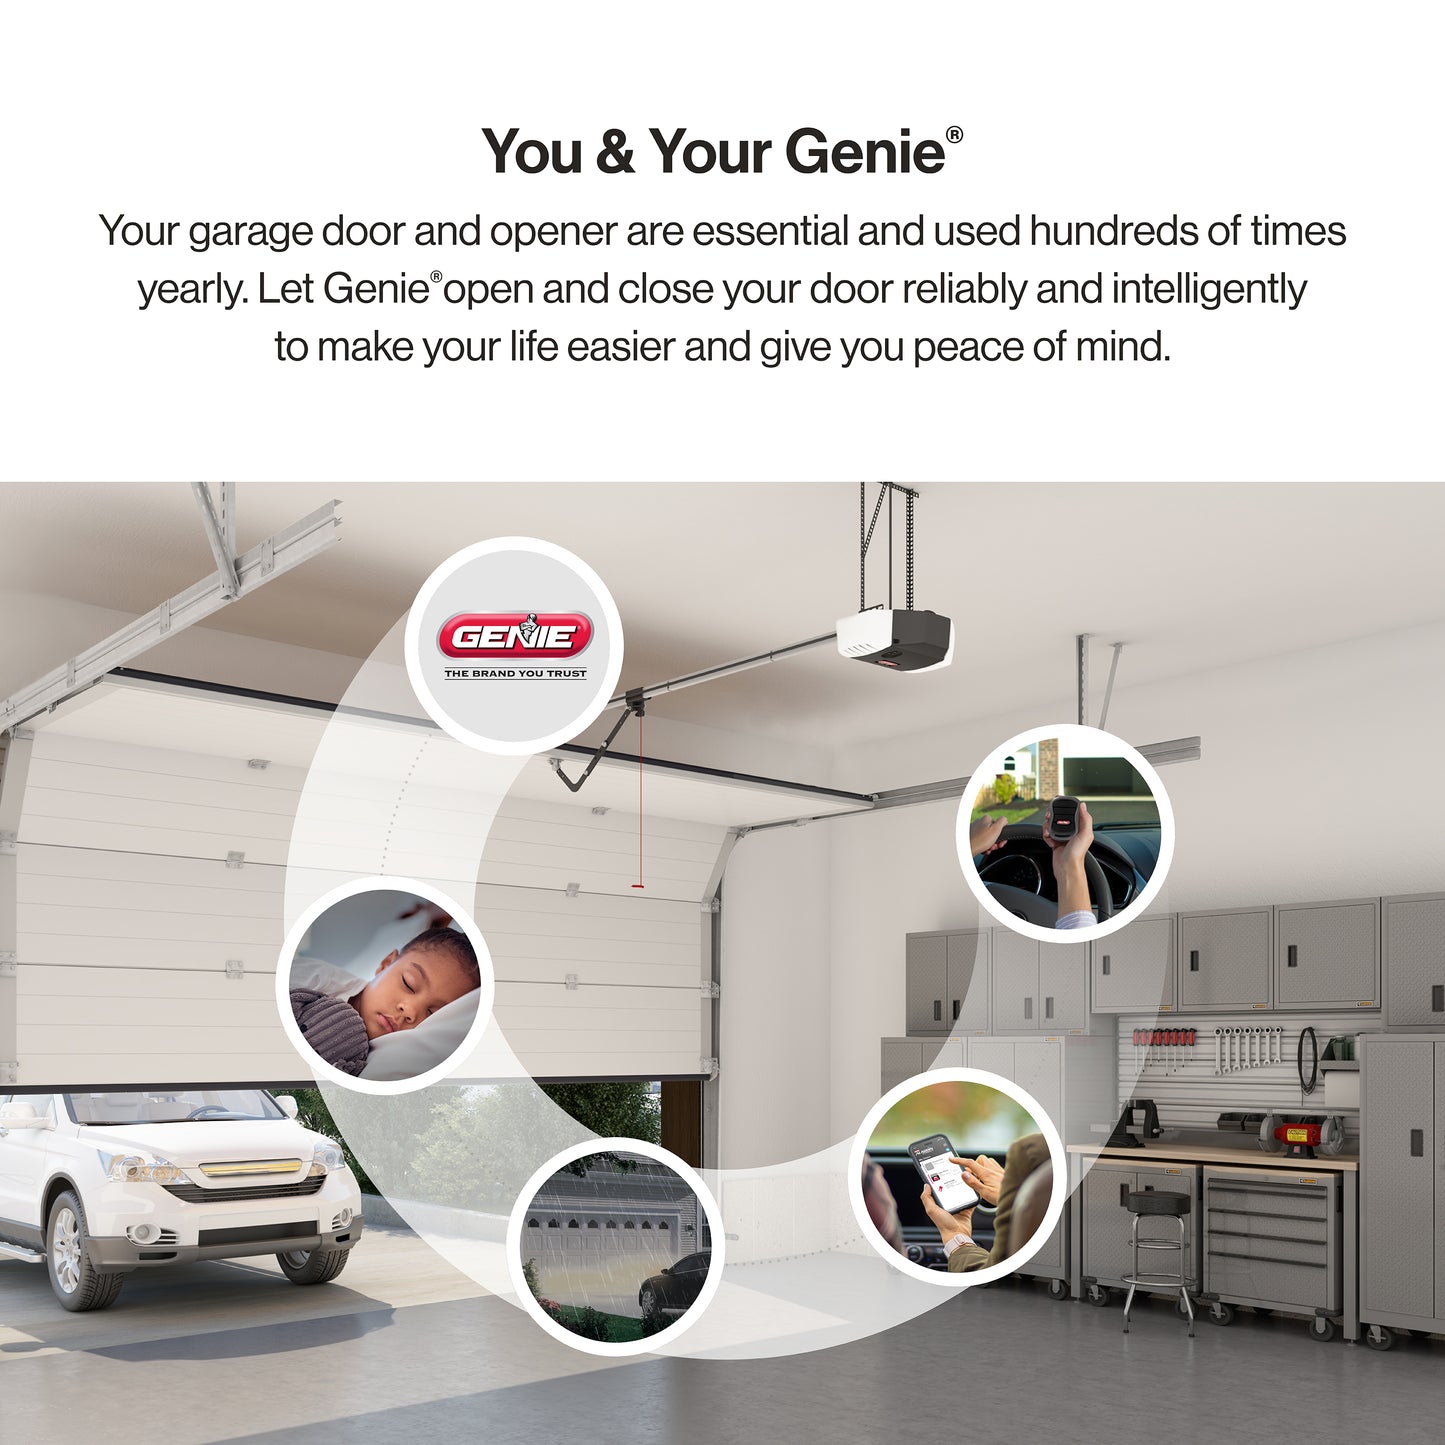 You and your Genie garage door opener